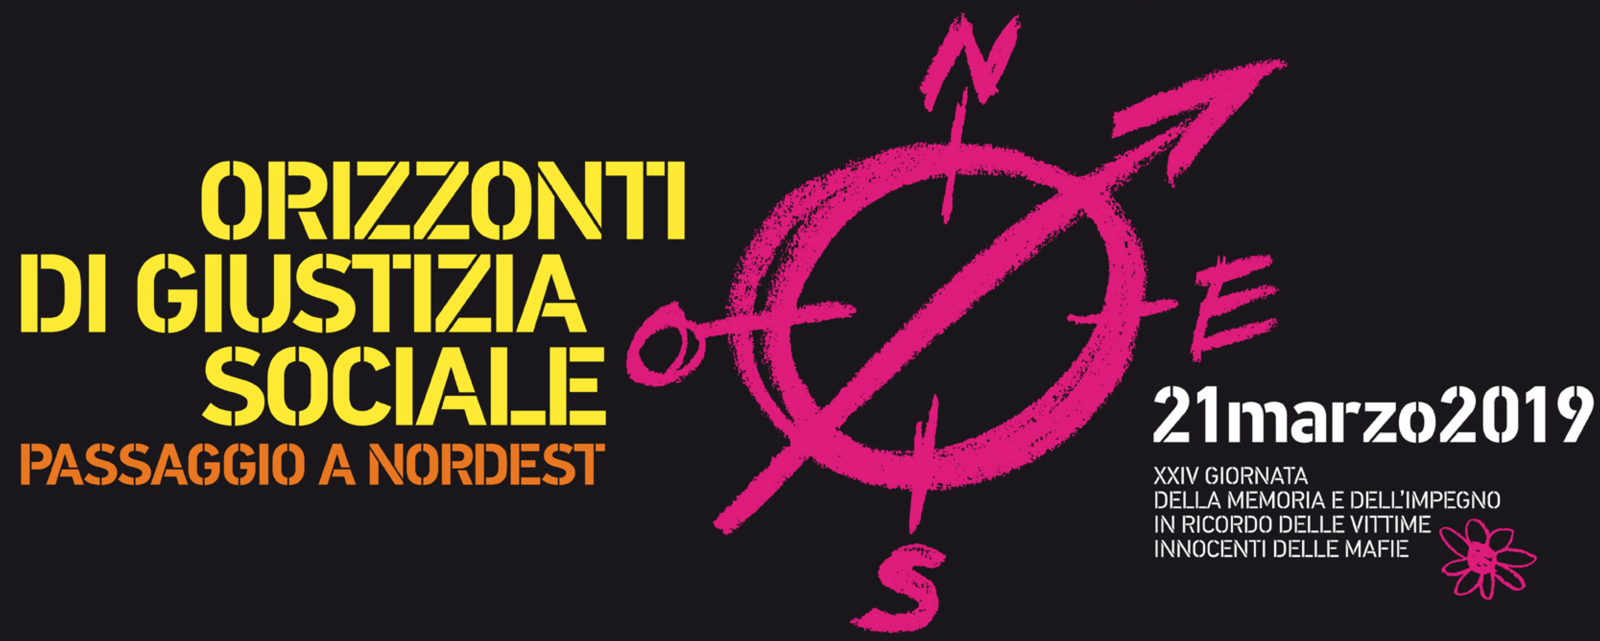 Vittime innocenti delle mafie: Manifestazione Nazionale a Padova il 21 marzo 2019